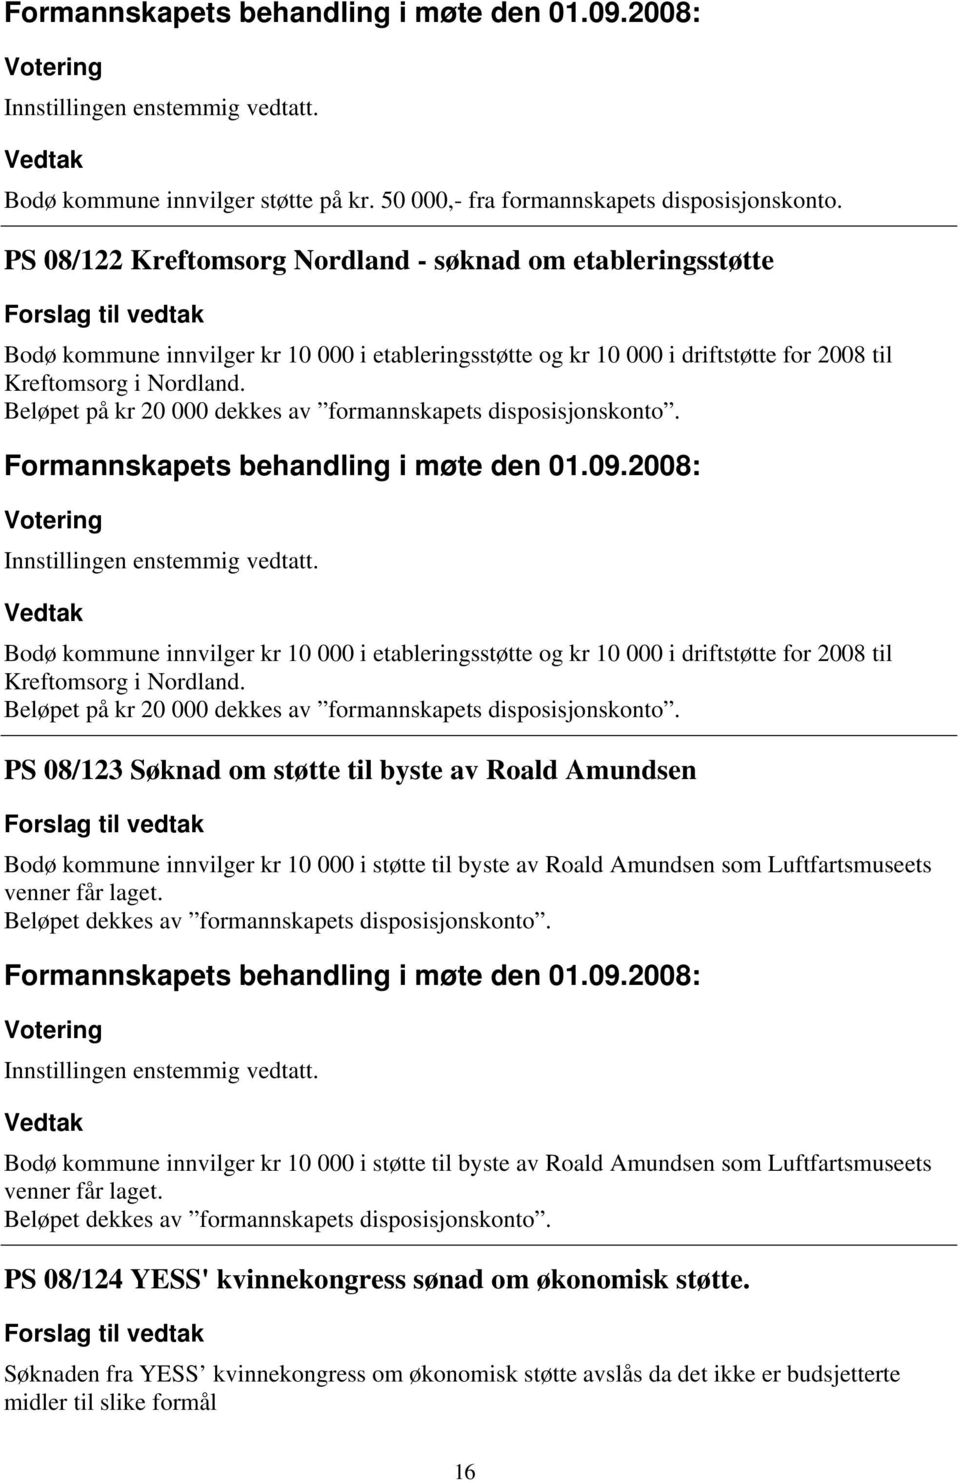 Beløpet på kr 20 000 dekkes av formannskapets disposisjonskonto. Bodø kommune innvilger kr 10 000 i etableringsstøtte og kr 10 000 i driftstøtte for 2008 til Kreftomsorg i Nordland.